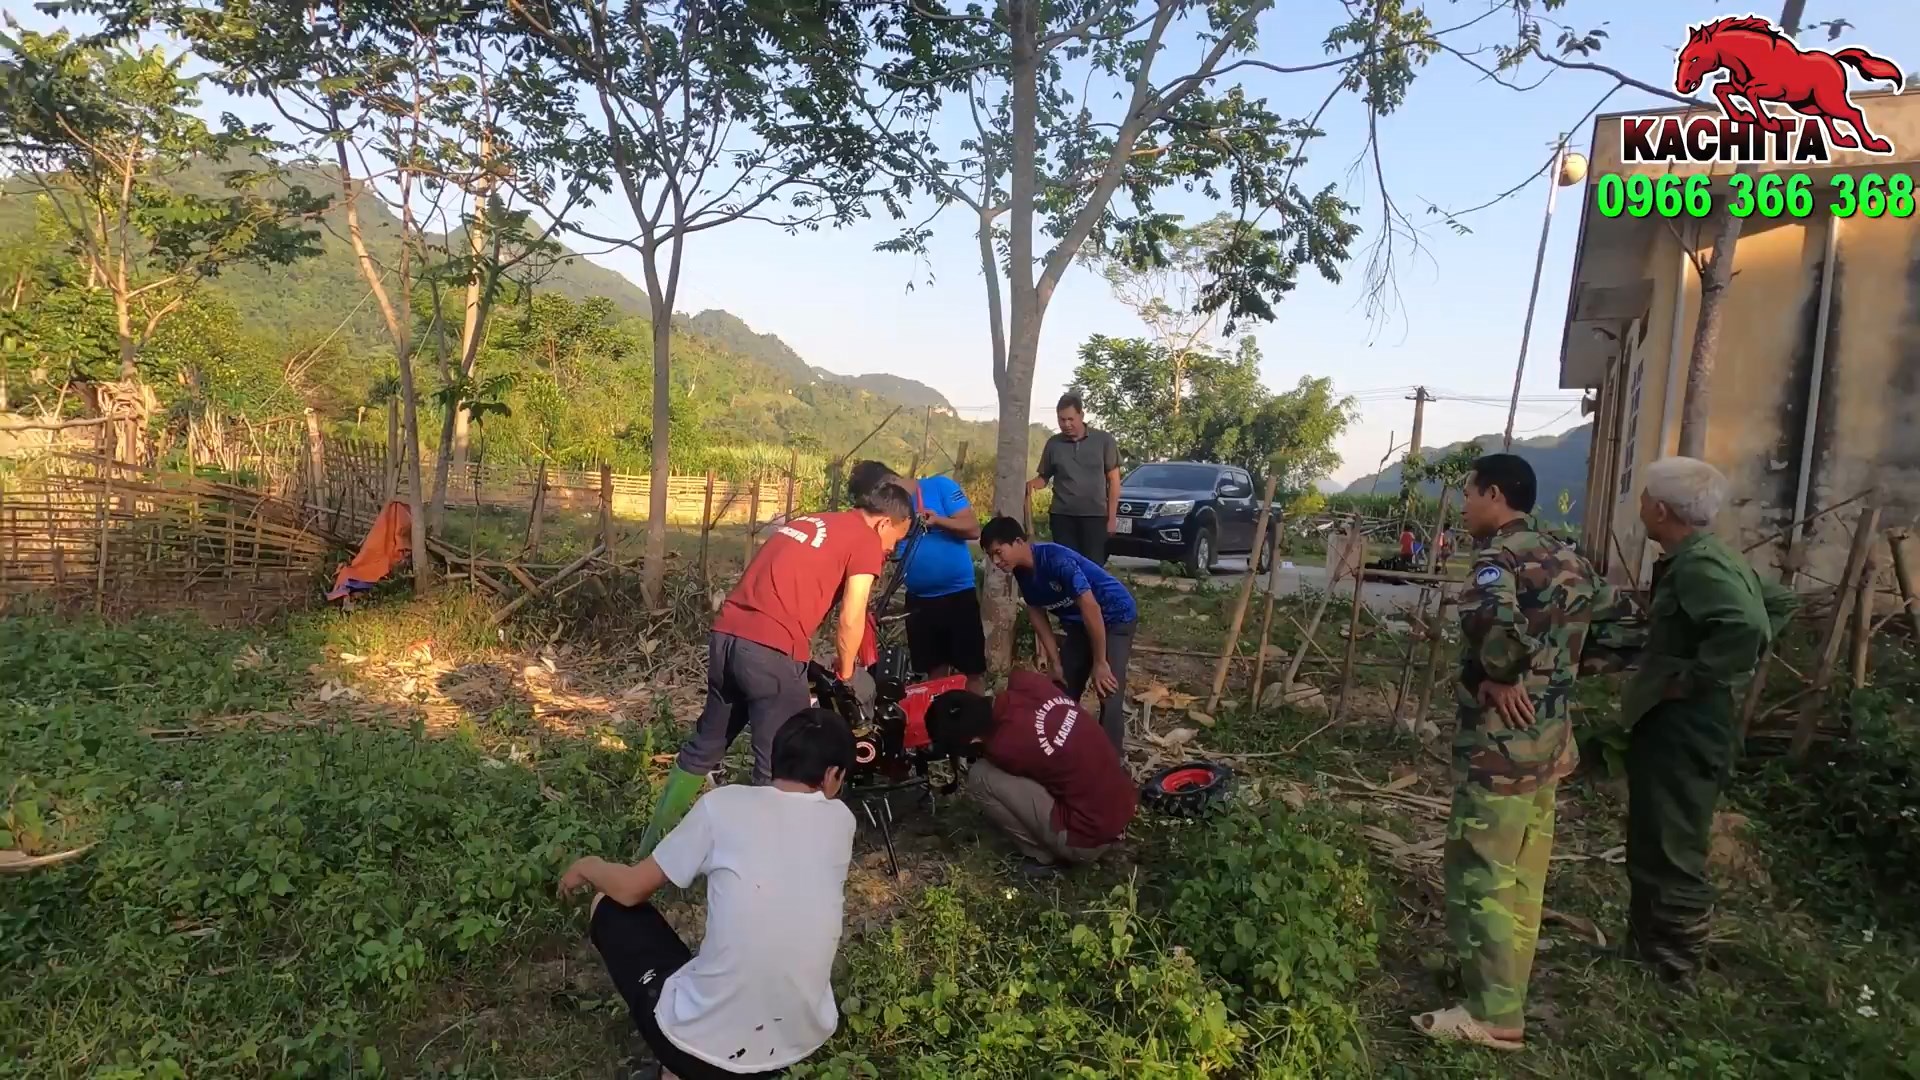 Bàn giao máy xới kachita kama 173m cho anh đông tại xã Lương Nội, Bá Thước, Thanh Hóa